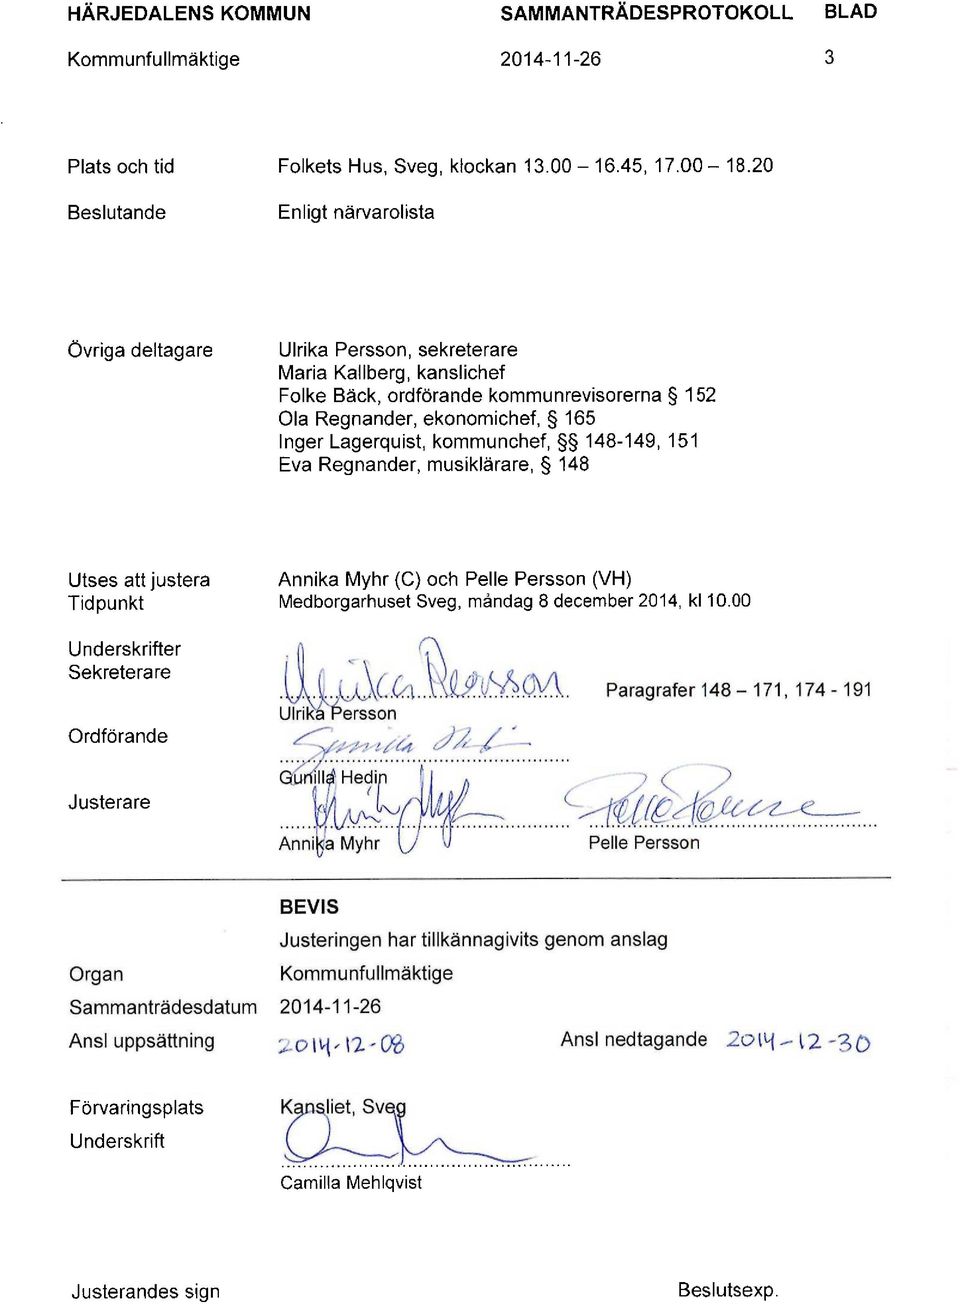 kommunchef, 148-149, 151 Eva Regnänder, musiklärare, 148 Utses att justera Tidpunkt Annika Myhr (C) och Pelle Persson (VH) Medborgarhuset Sveg, måndag 8 december 2014, kl 10.